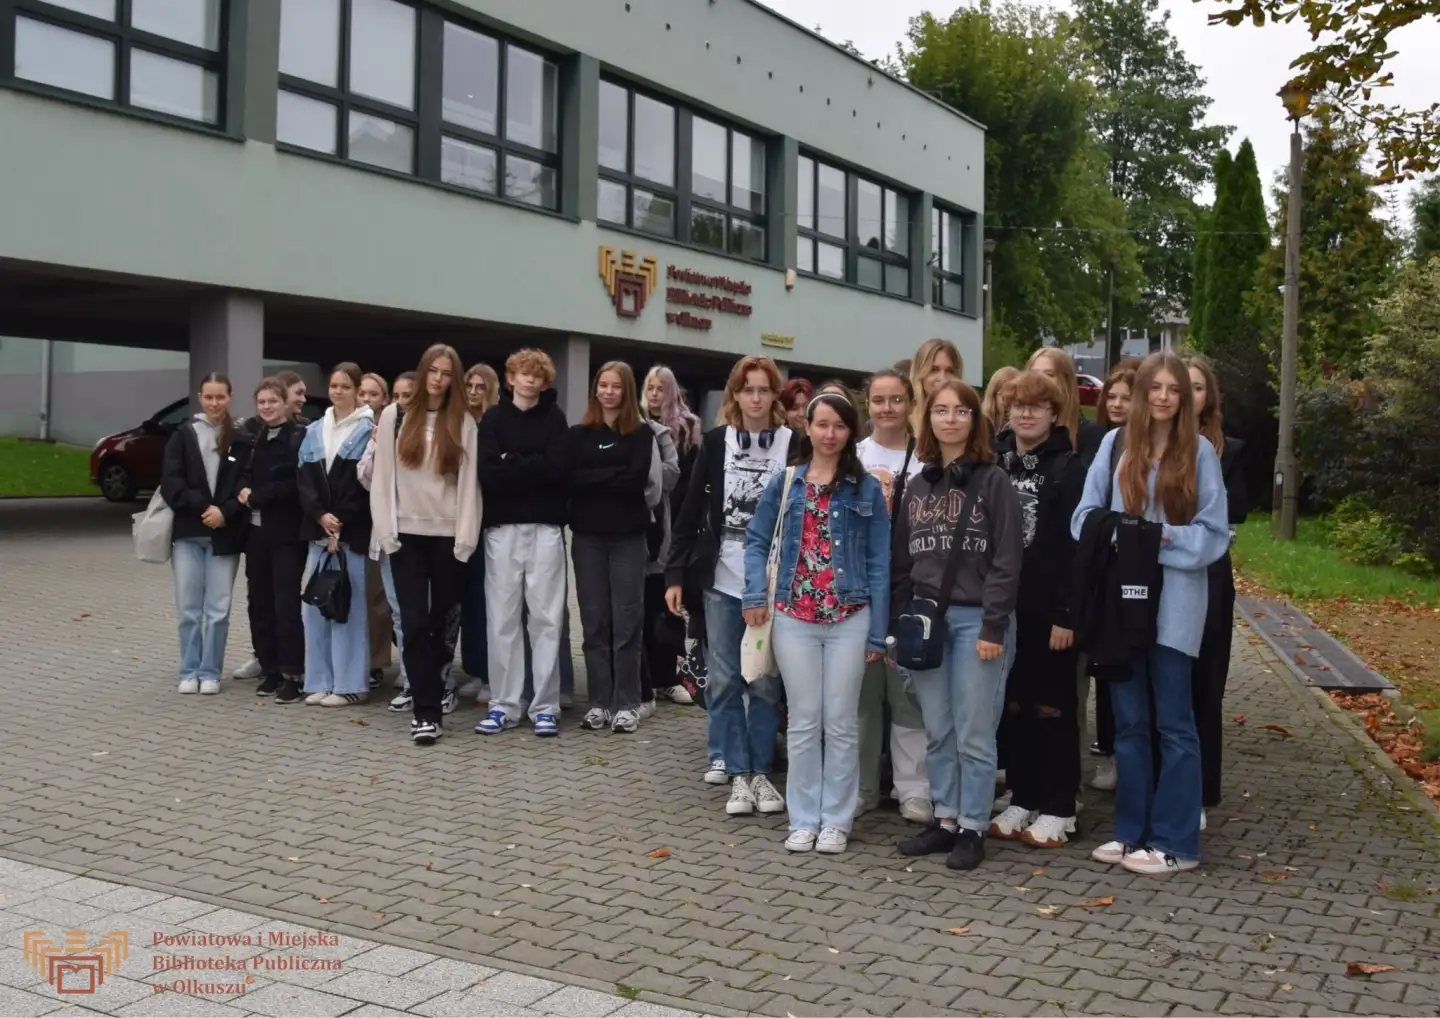 Zdjęcie zostało zrobione przed budynkiem olkuskiej Biblioteki. Przedstawia dużą grupę młodzieży licealnej.